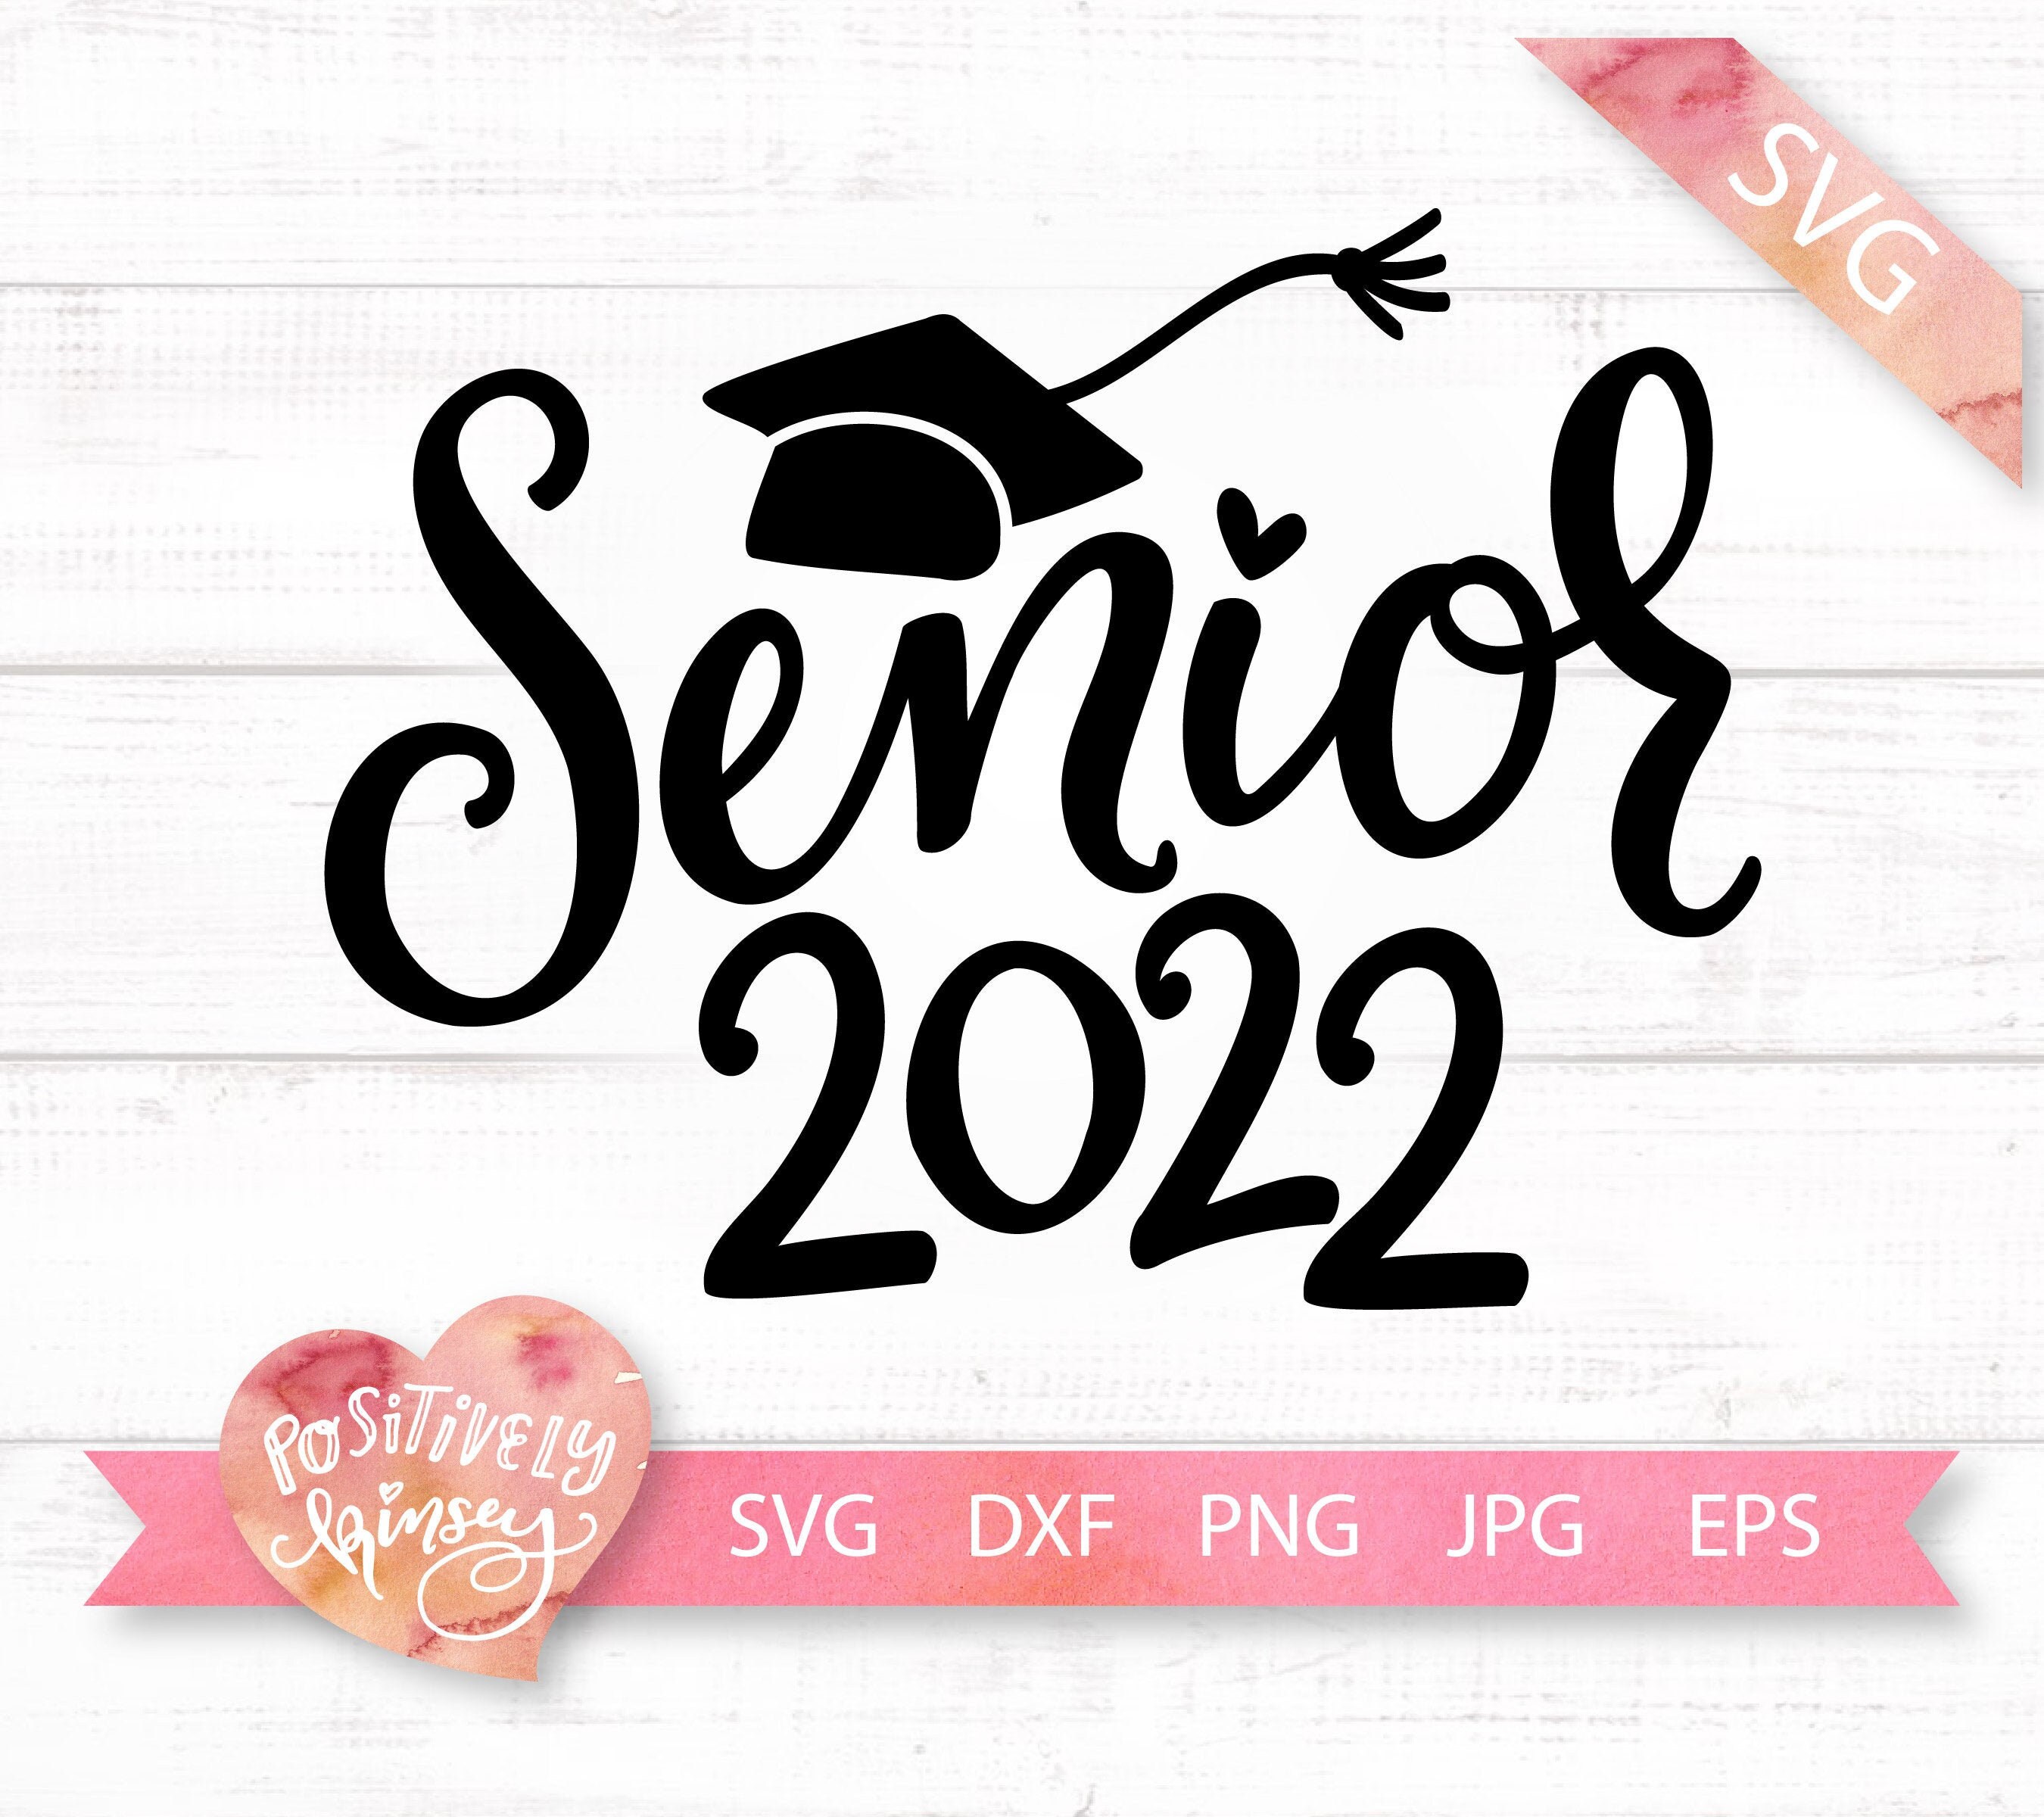 Senior 2022 SVG Senior Svg Graduation Svg Grad Svg - Etsy